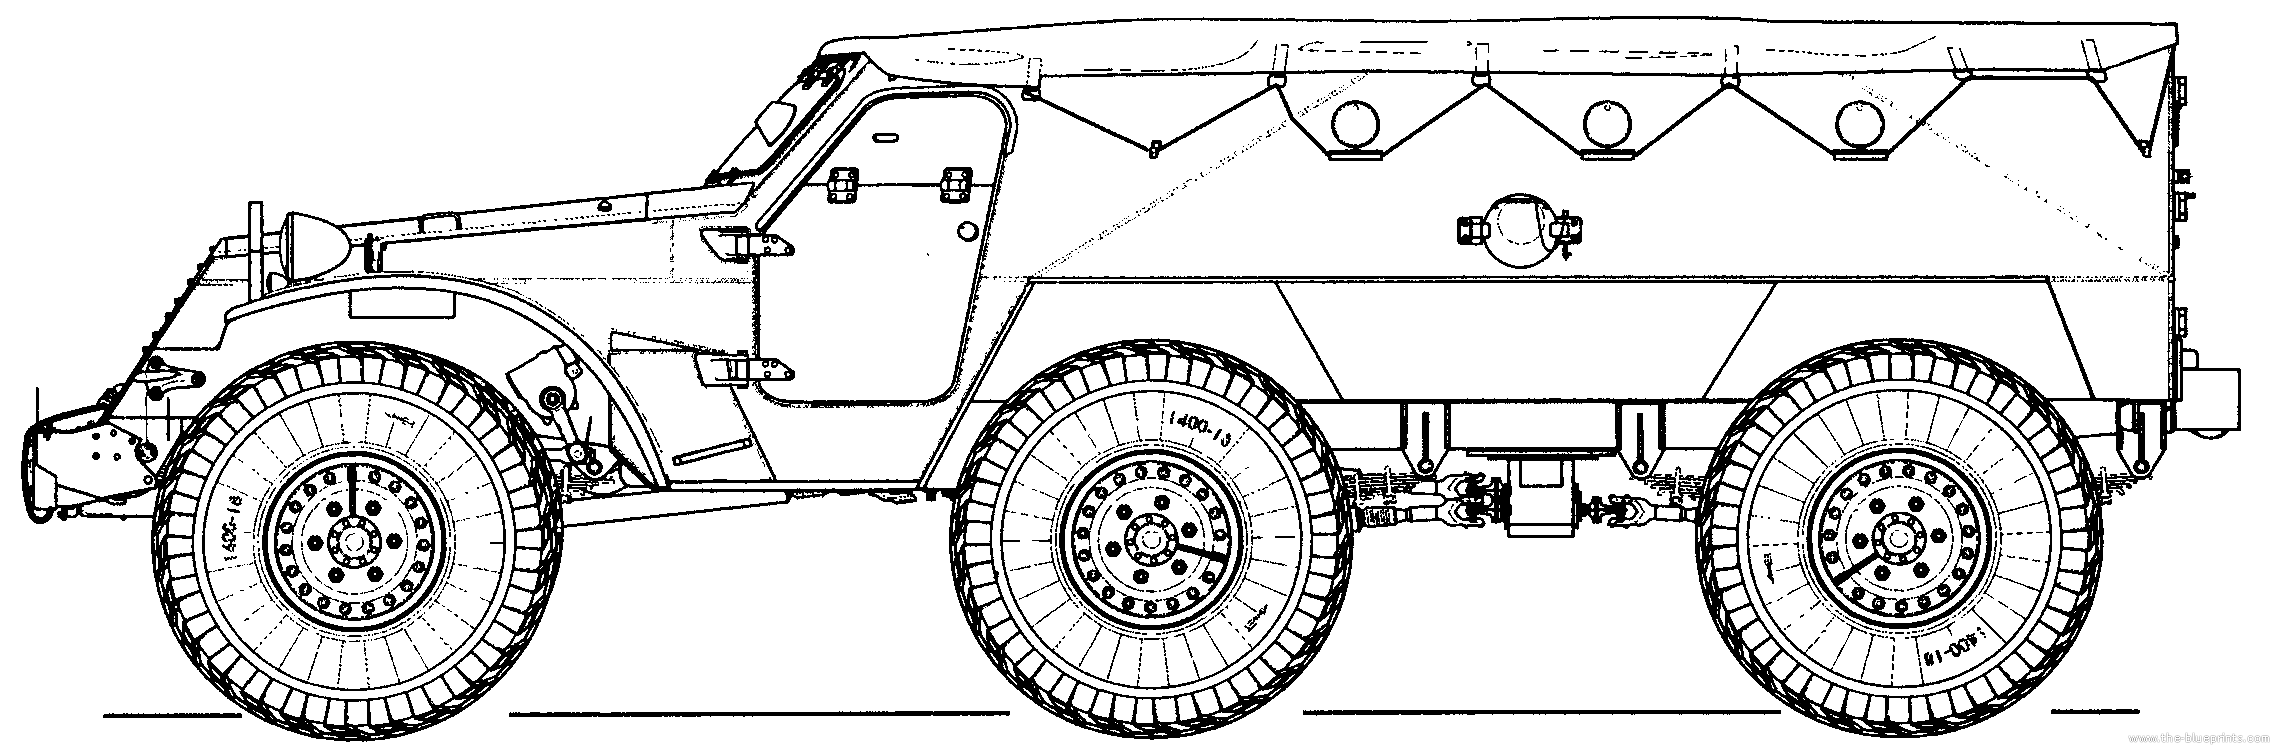 БТР-152 бронетранспортёр чертежи